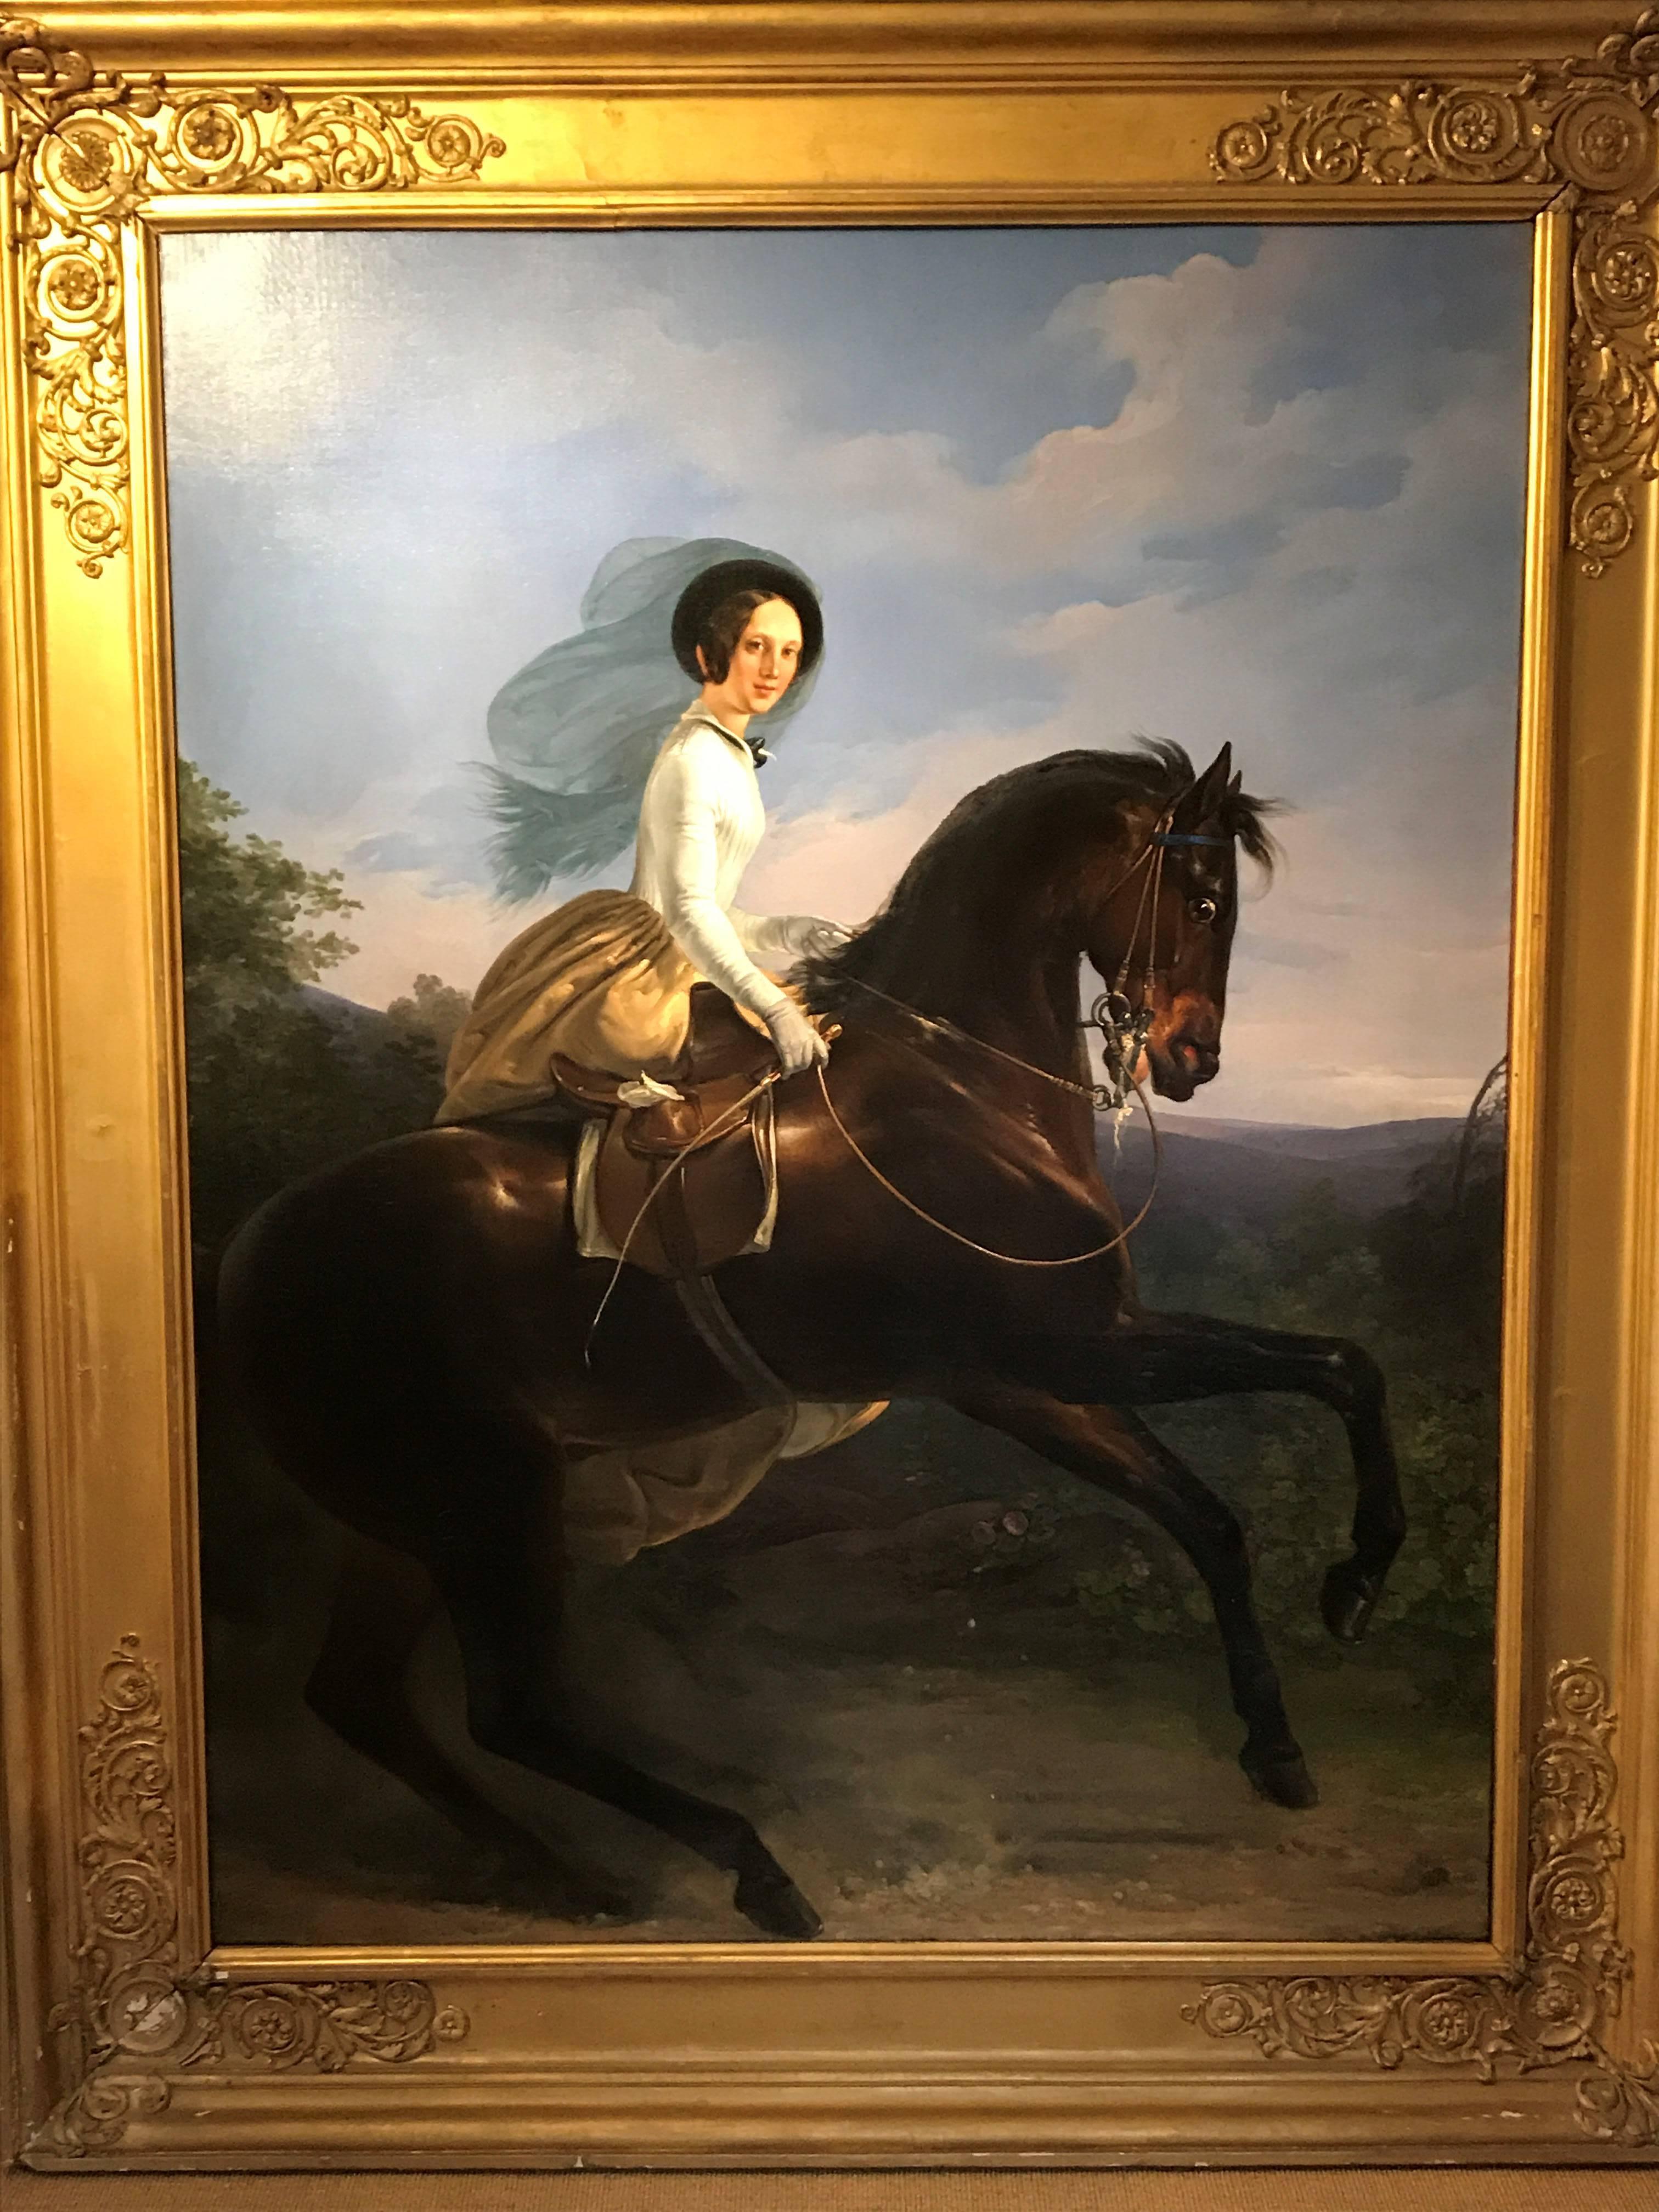 Porträt der Prinzessin von Joinville auf einem braunen Pferd
Henri d'Aincy, Le Comte Monpezat (französisch 1817-1859)
Gemalt um 1837-9
öl auf Leinwand
113 x 92 Zoll (einschließlich Rahmen)
92 x 70 Zoll (ungerahmt)

Provenienz - aus einer königlichen